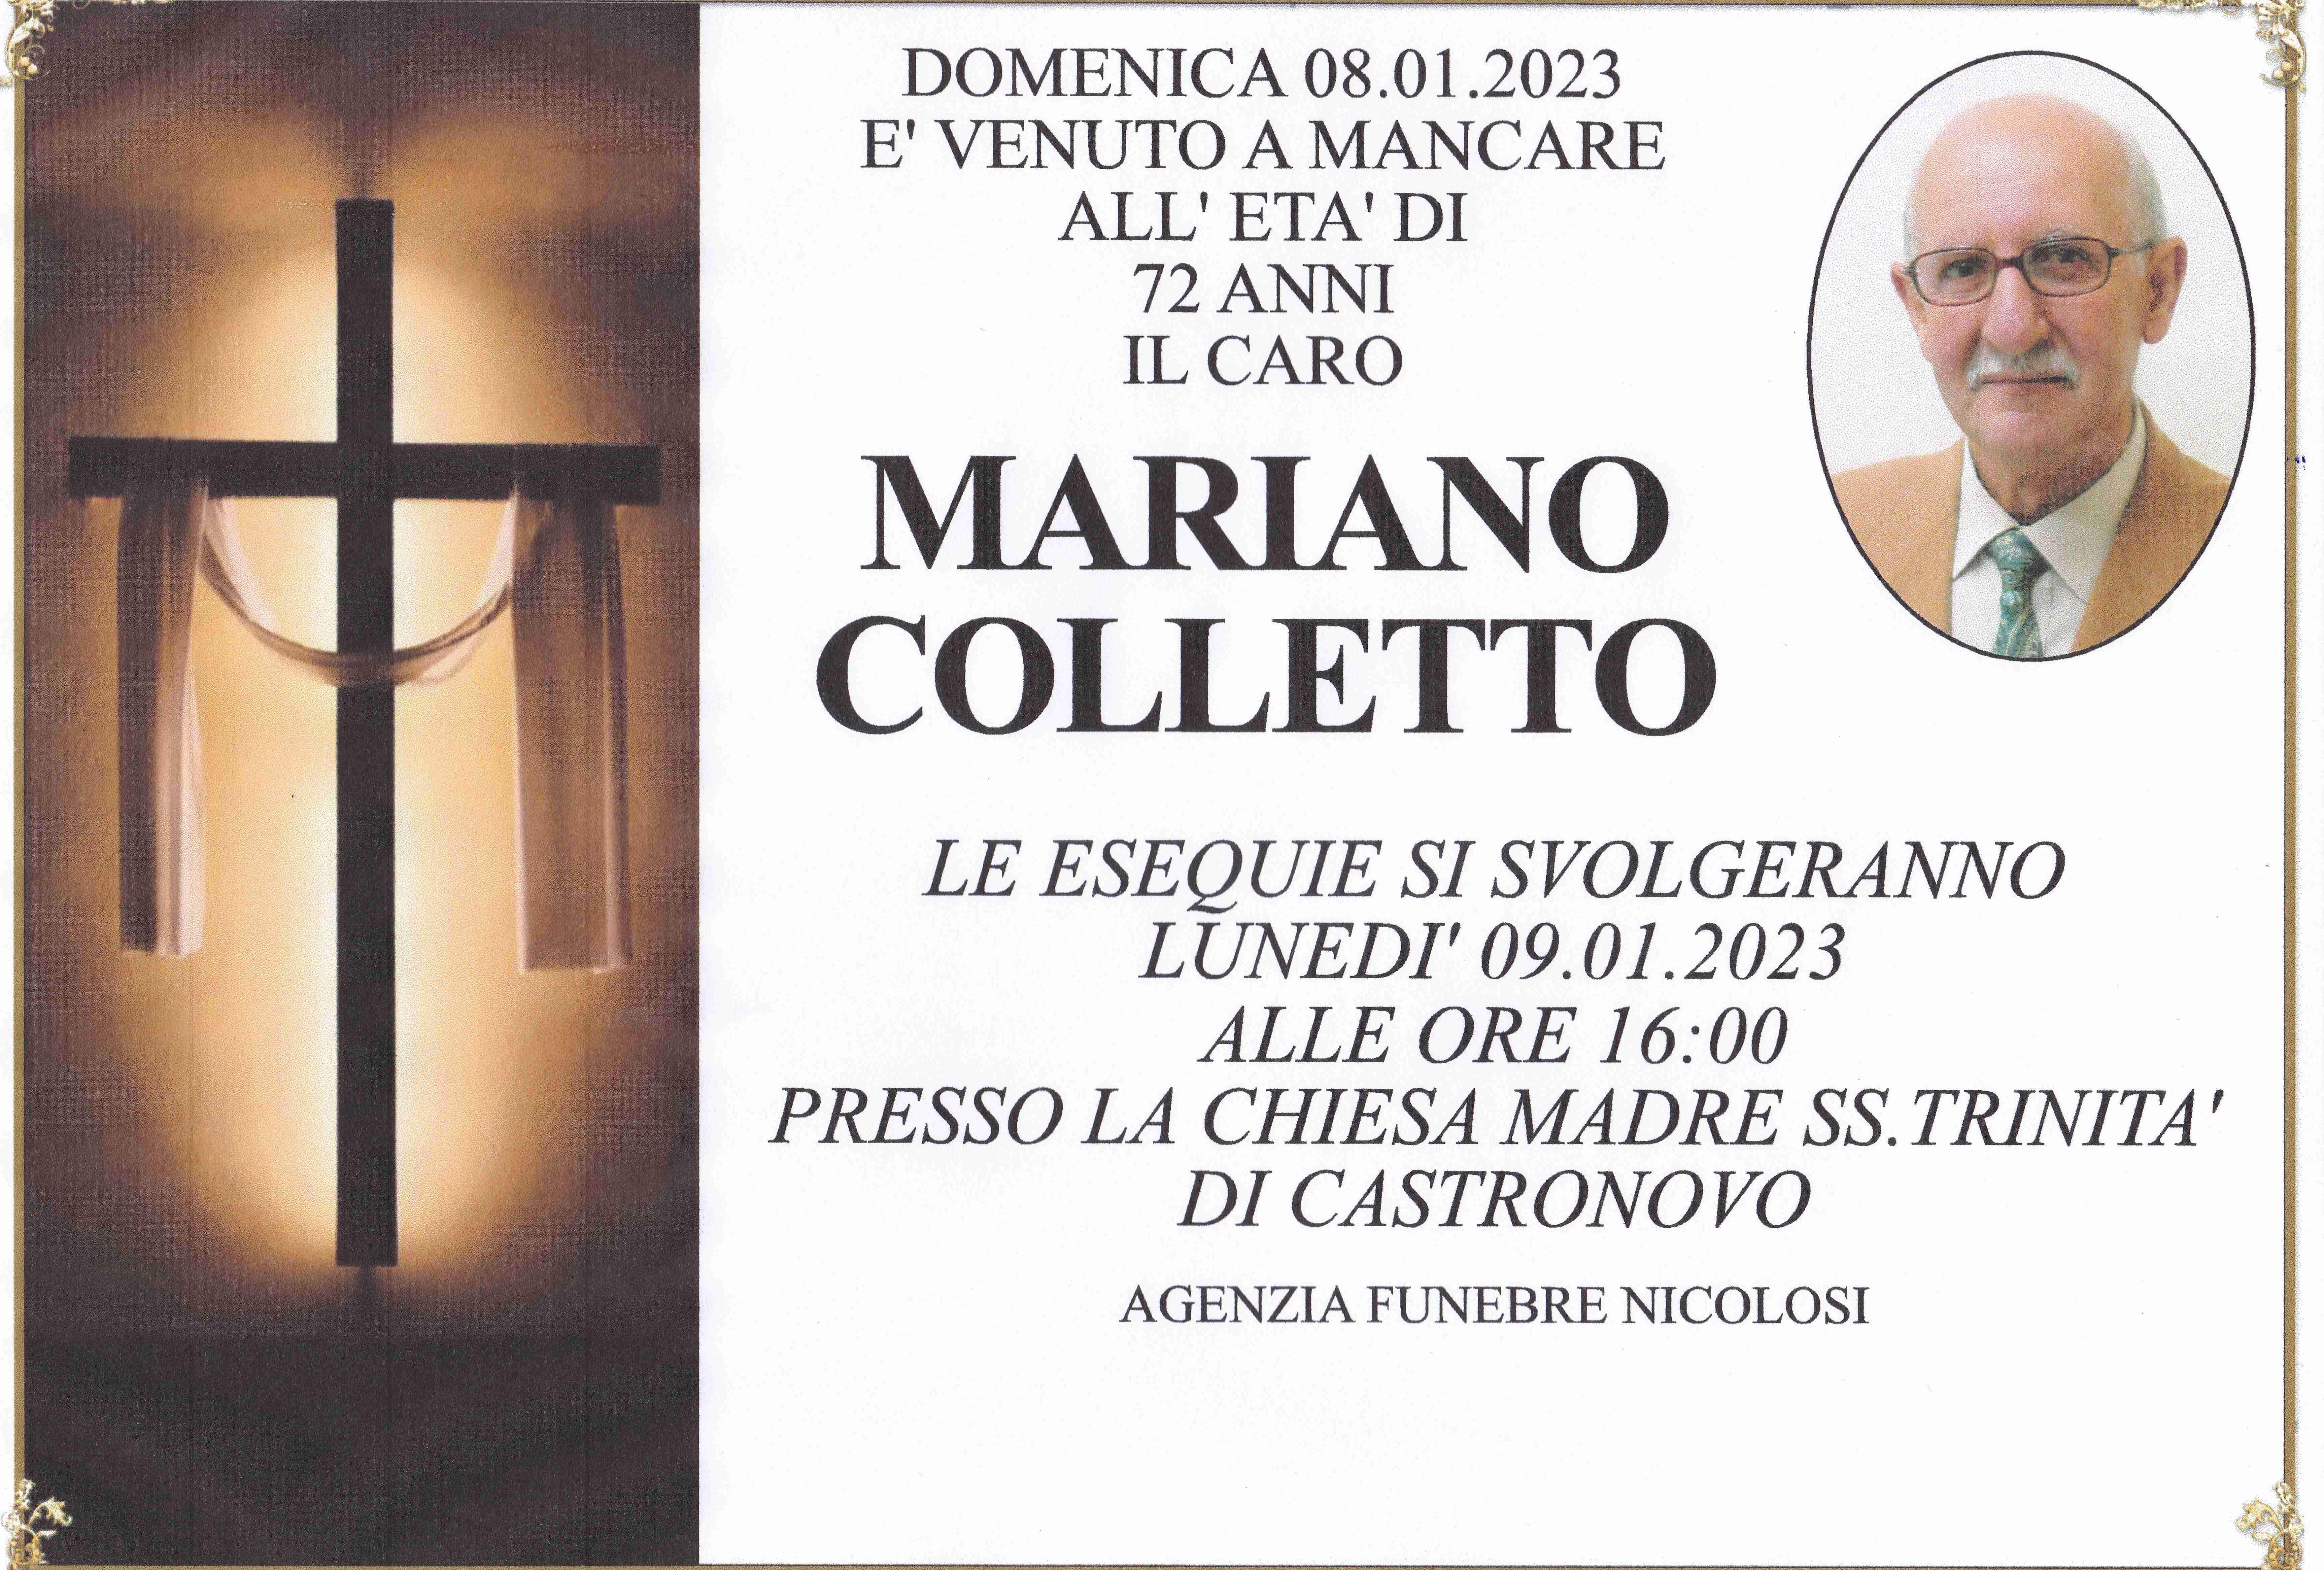 Mariano Colletto